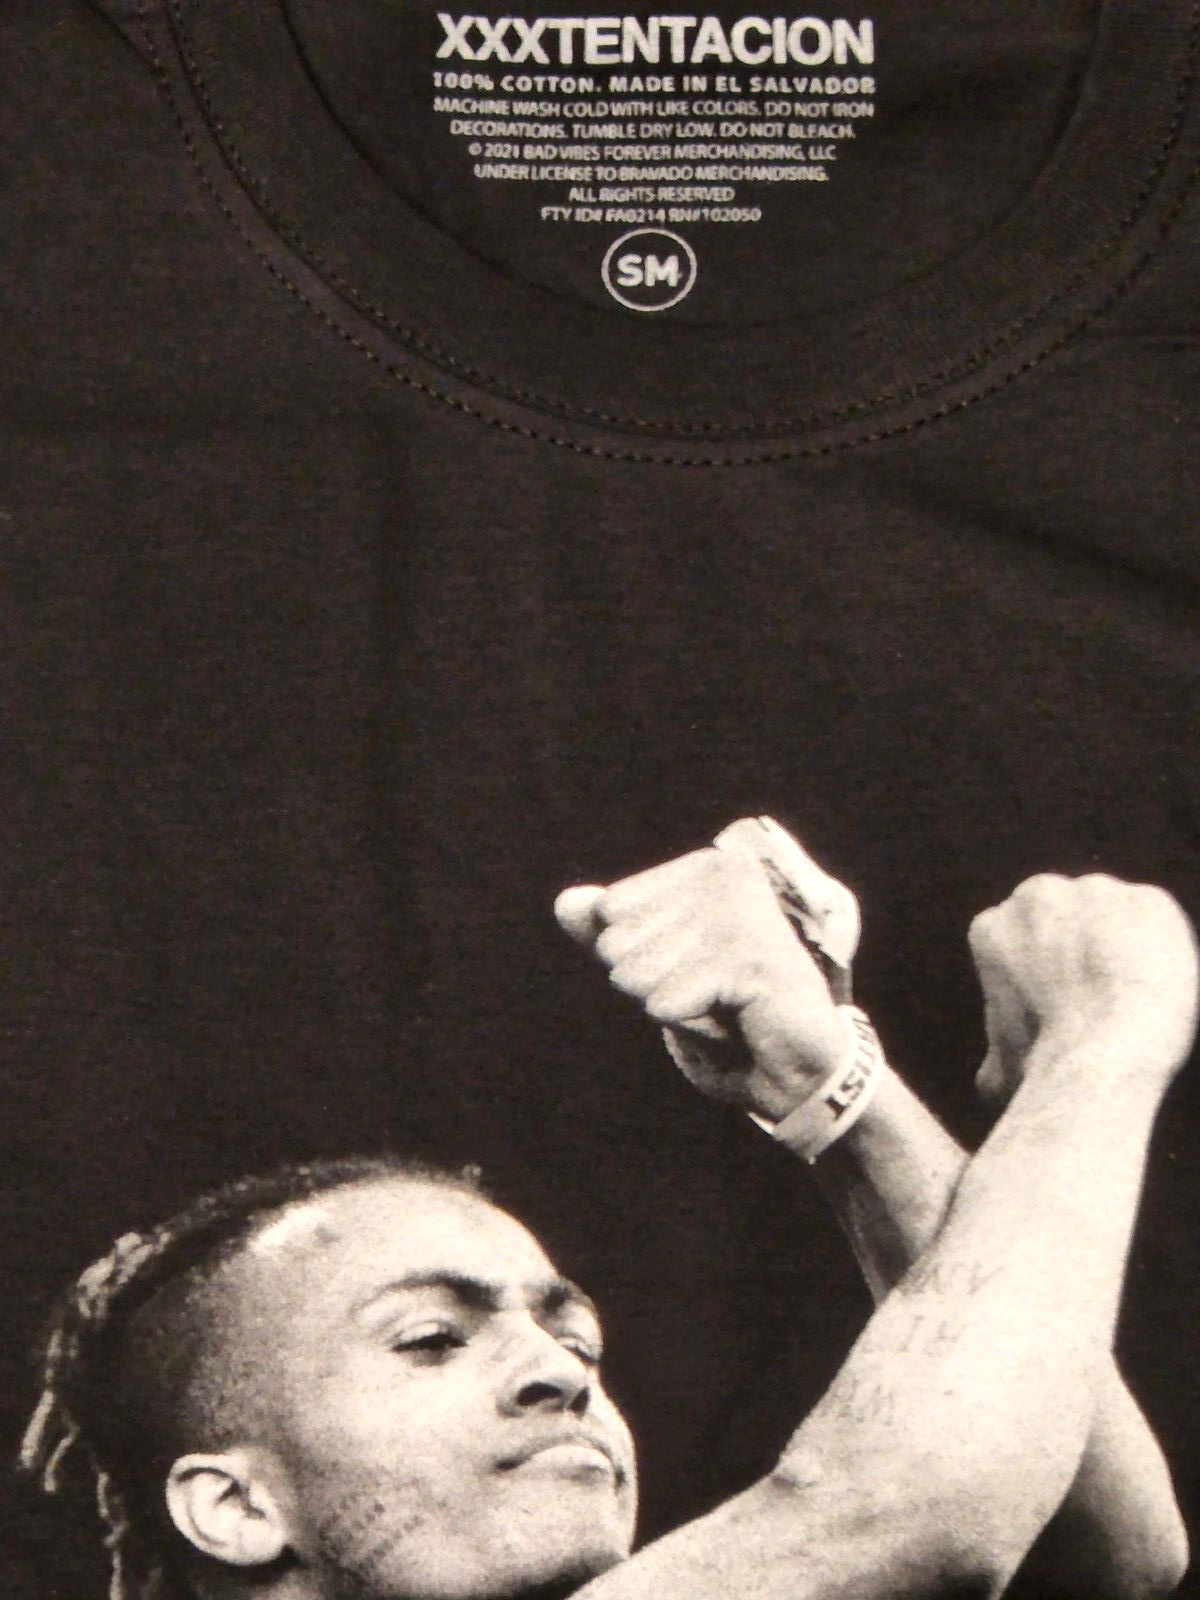 XXXtentacion Memorial Men's T-Shirt Black Unisex 100% Cotton - NEW